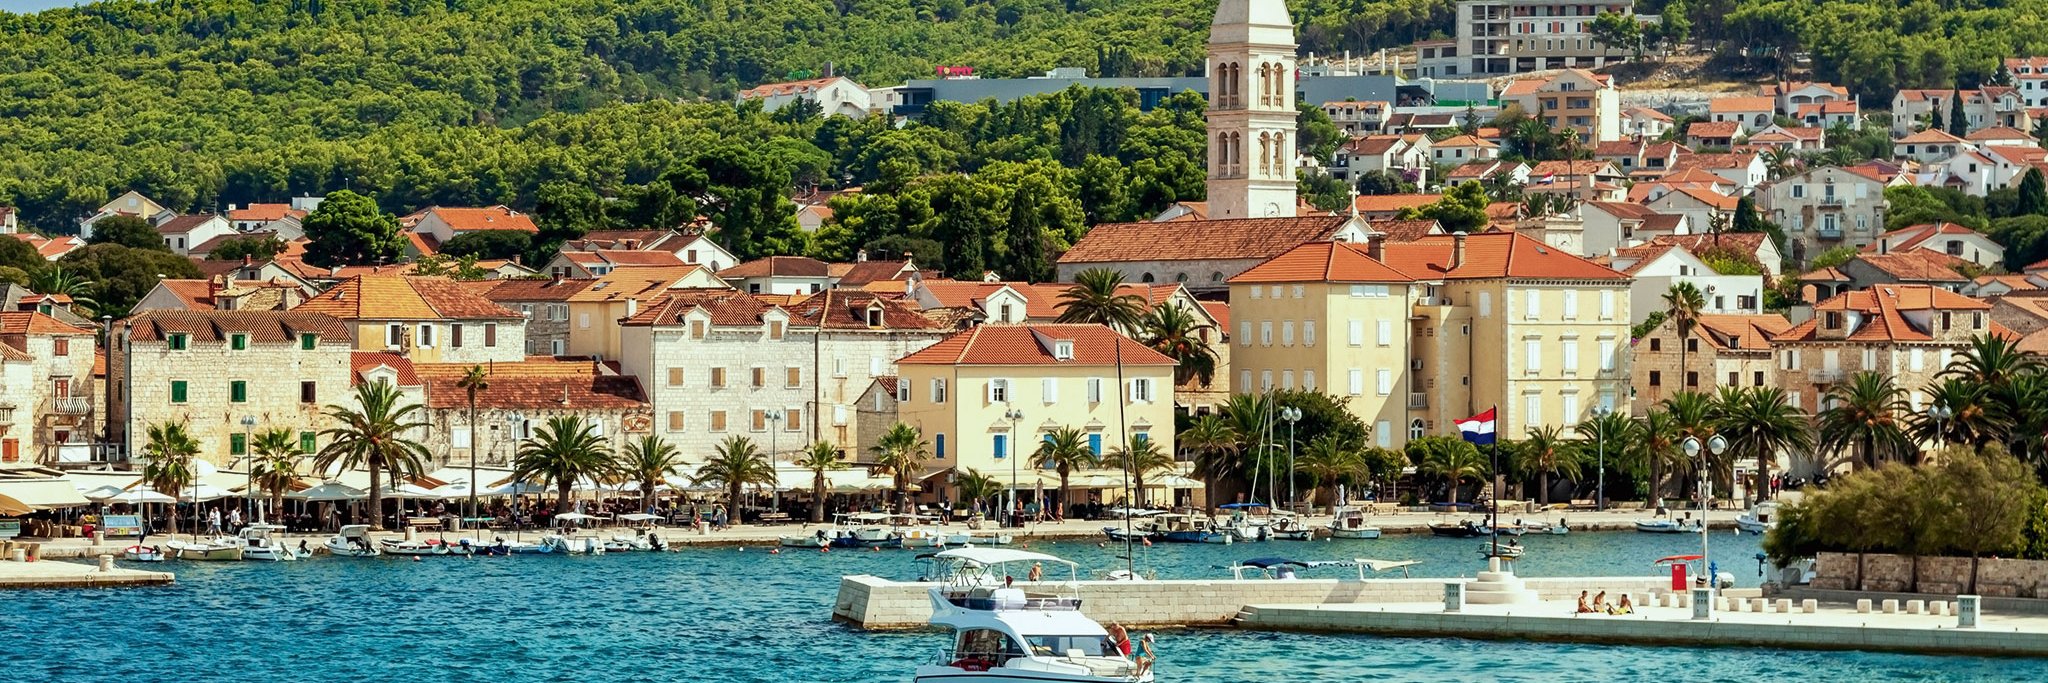 Der Hafen von Supetar, dem mit knapp 3500 Einwohnern größten Städtchen auf Brač. Von hier verkehren beinahe stündlich Fähren nach Split.